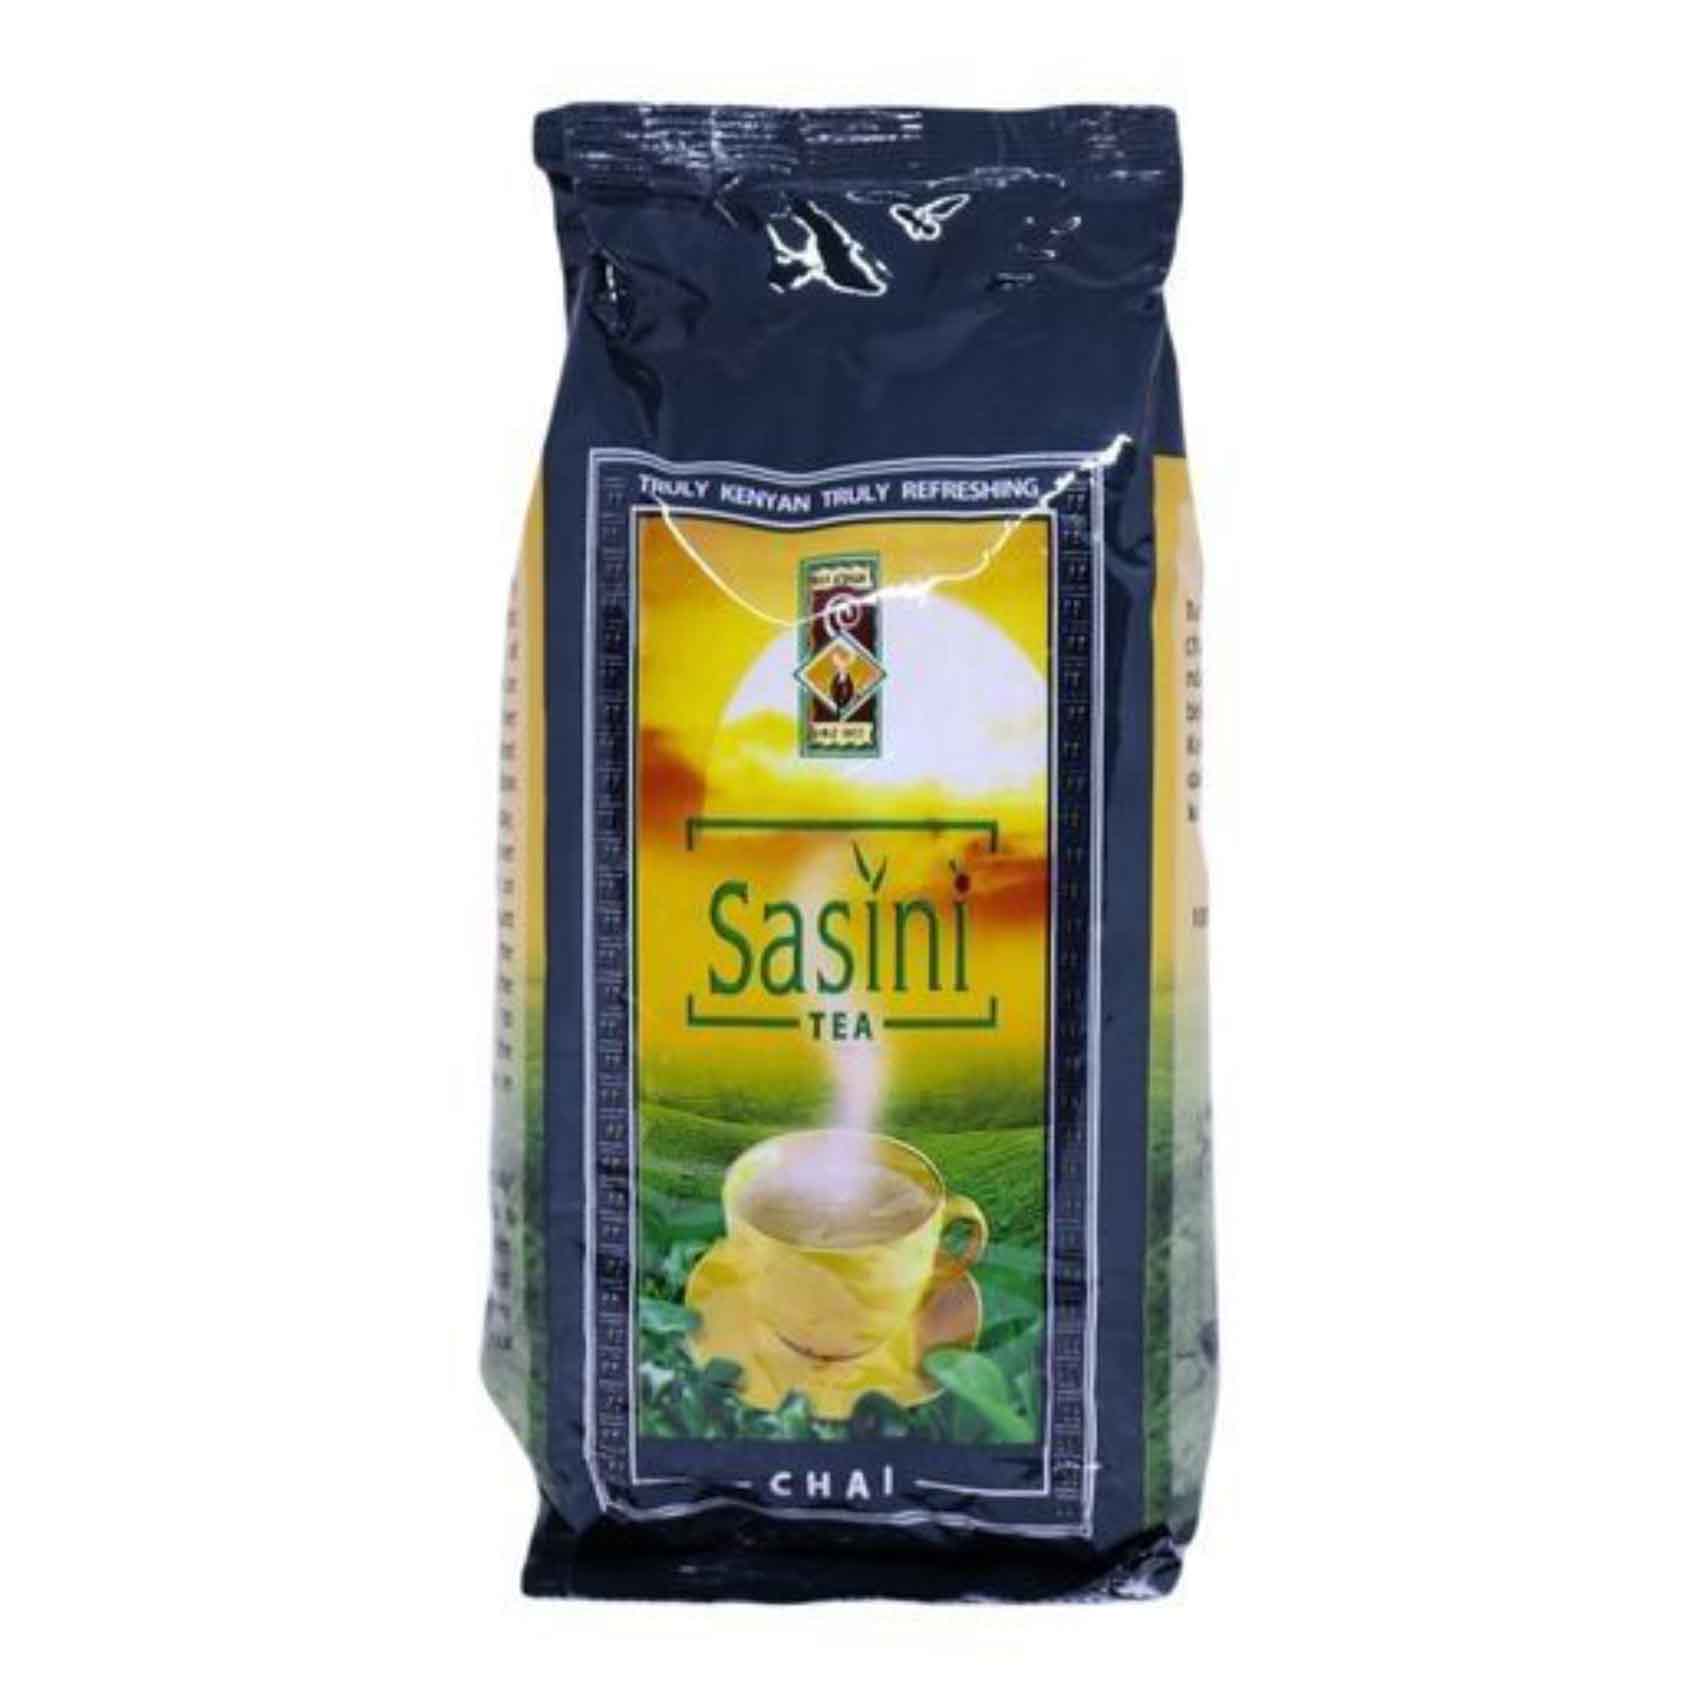 Sasini Classic Tea Leaves 250g